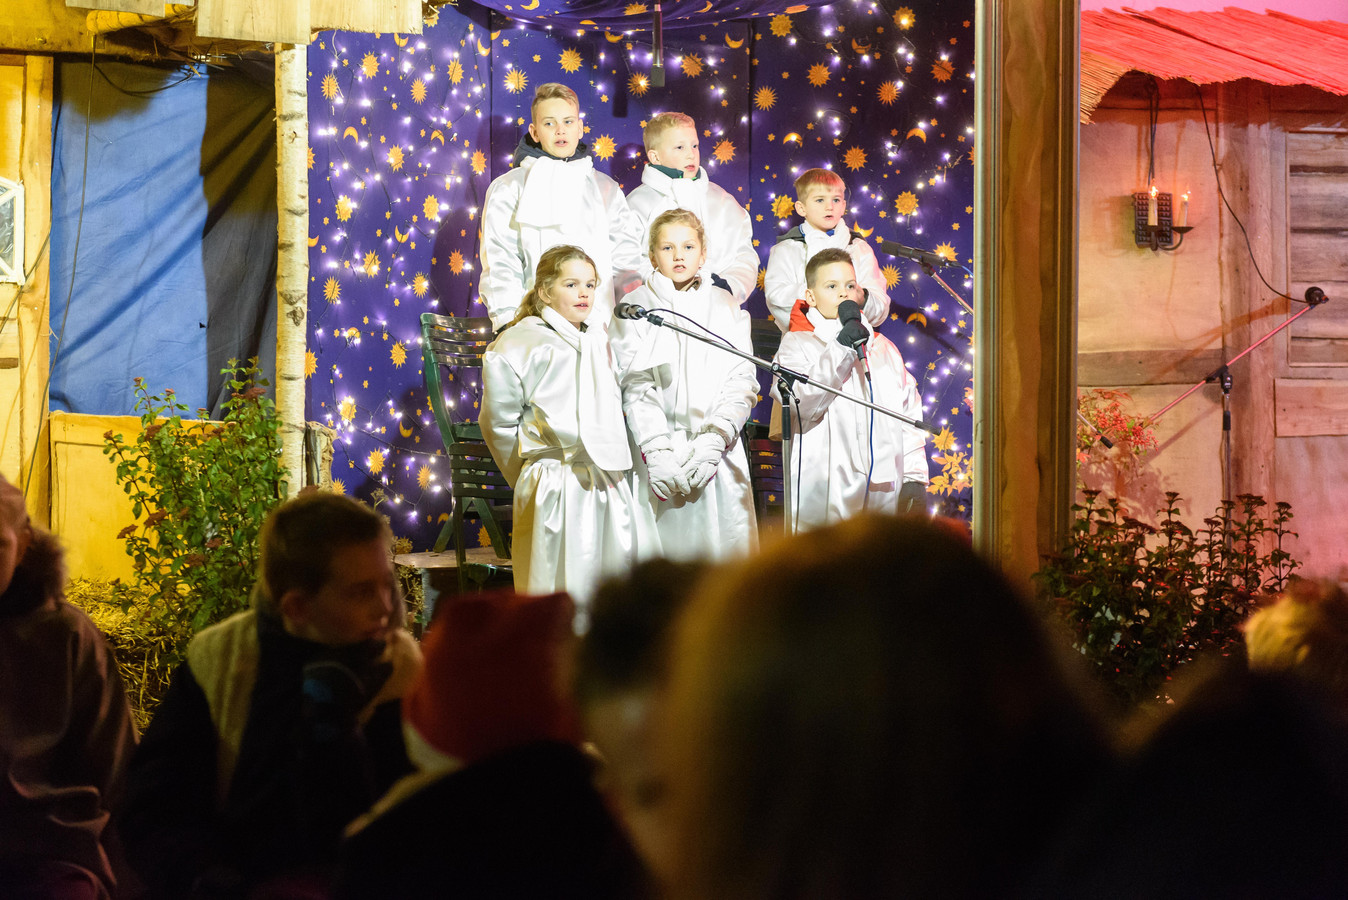 De Haaksbergse Ondernemersvereniging hult Haaksbergen in kerstsfeer. „We willen het Winter Wonder Event in ere herstellen.”